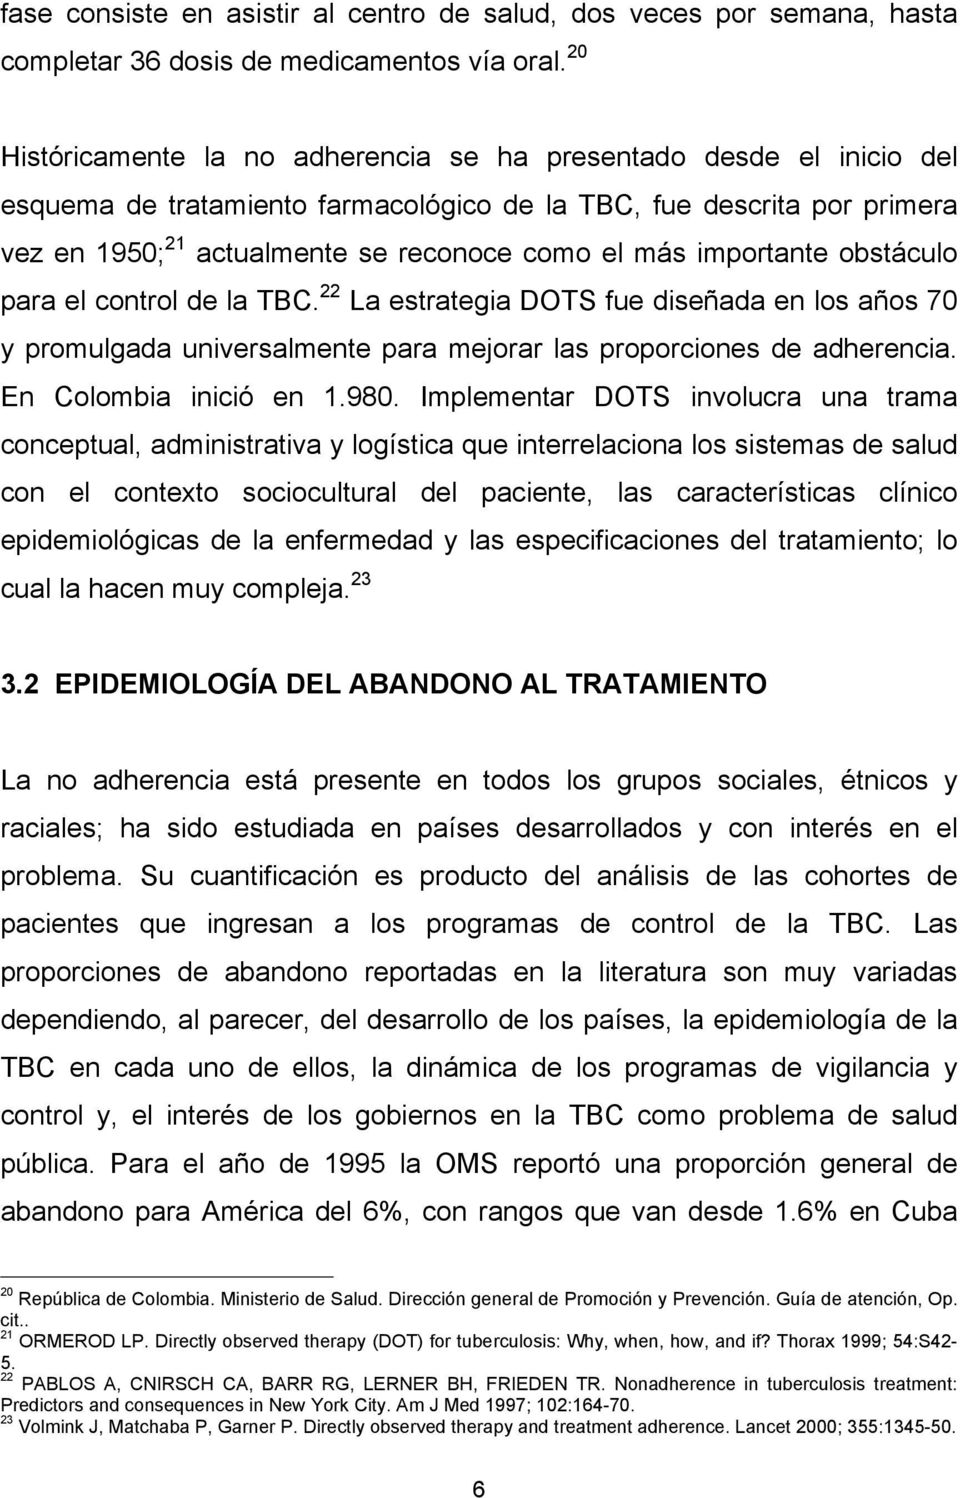 importante obstáculo para el control de la TBC. 22 La estrategia DOTS fue diseñada en los años 70 y promulgada universalmente para mejorar las proporciones de adherencia. En Colombia inició en 1.980.